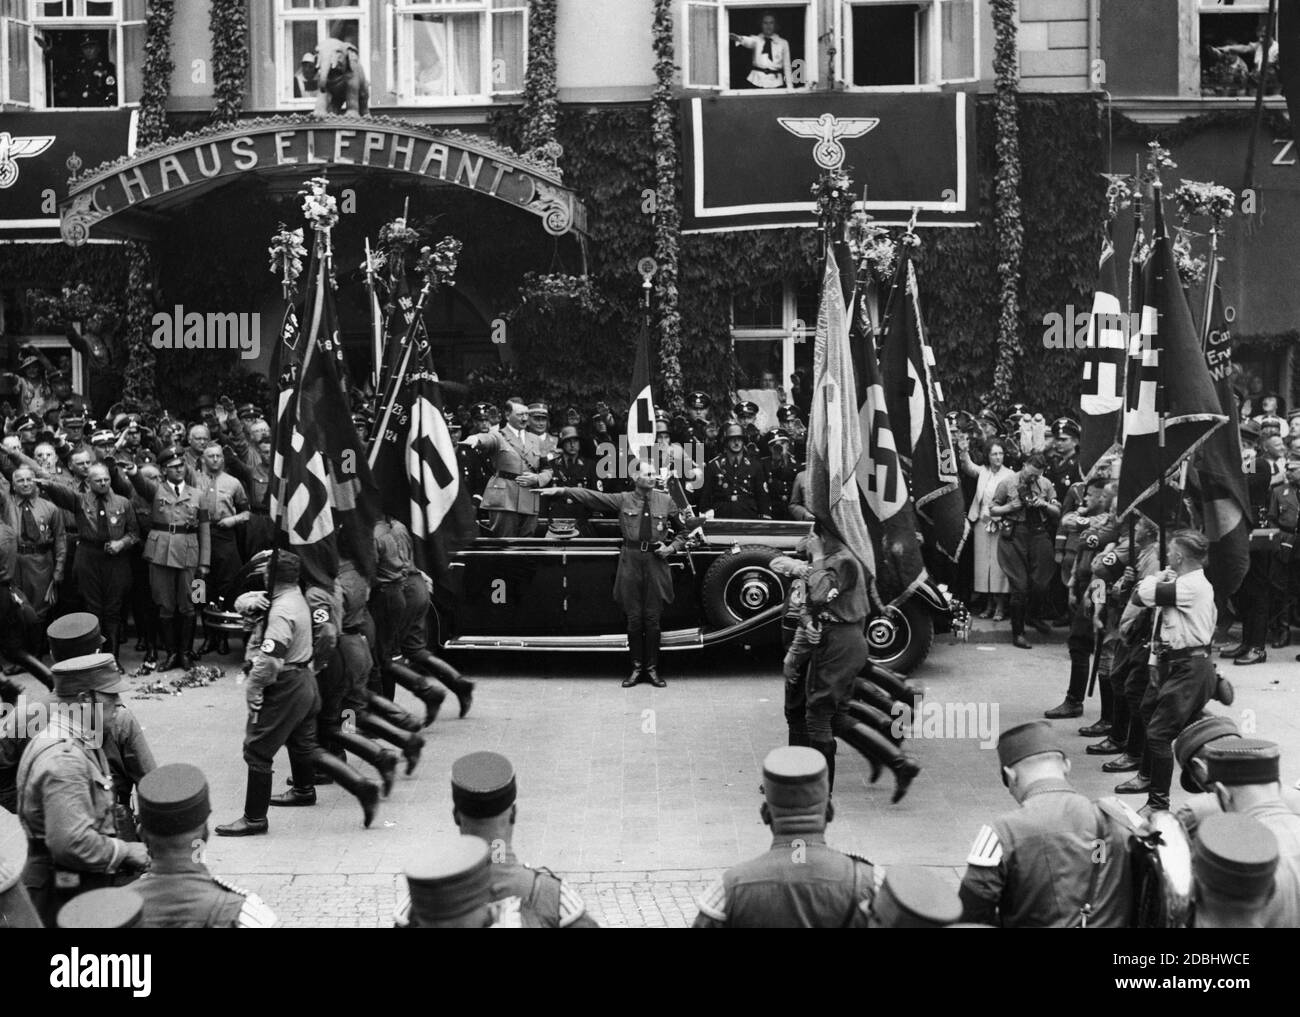 SA-Mitglieder marschieren mit ihren Sturmfahnen an Adolf Hitler vorbei. Rudolf Hess steht vor dem Auto. Hinter Adolf Hitlers Auto steht die Blutfahne. Im Hintergrund ist der Eingang zum Haus Elephant. Stockfoto